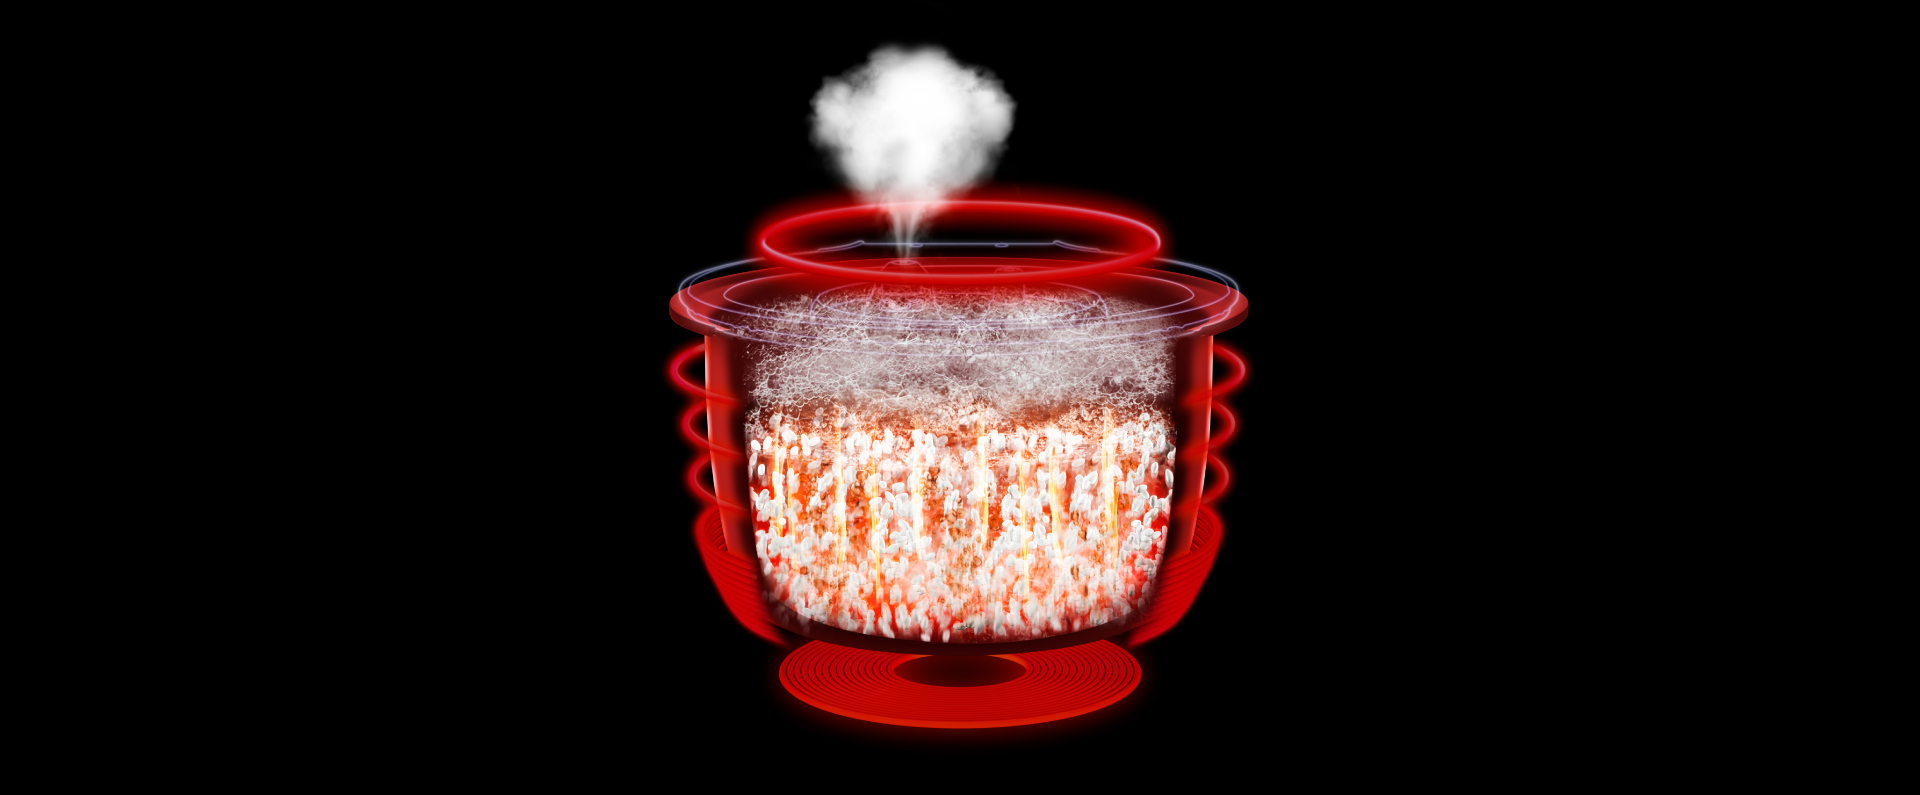 パナソニック炊飯器の火力・圧力技術をイメージしたCGと、炊飯中の様子の画像です。